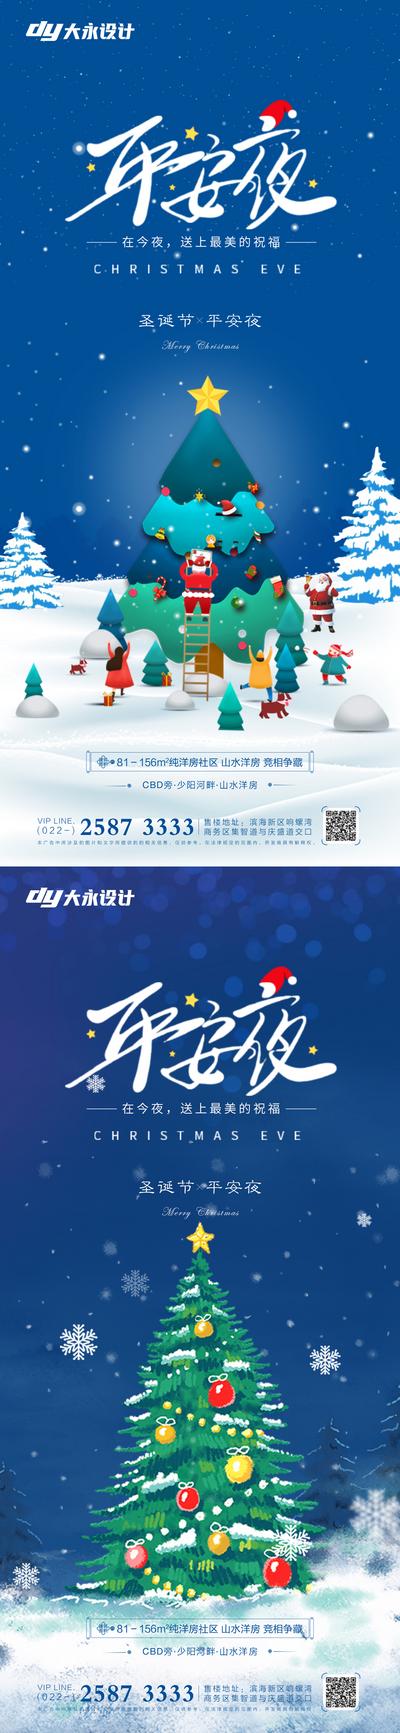 【南门网】海报 地产 公历节日 圣诞节 平安夜 铃铛 圣诞树 